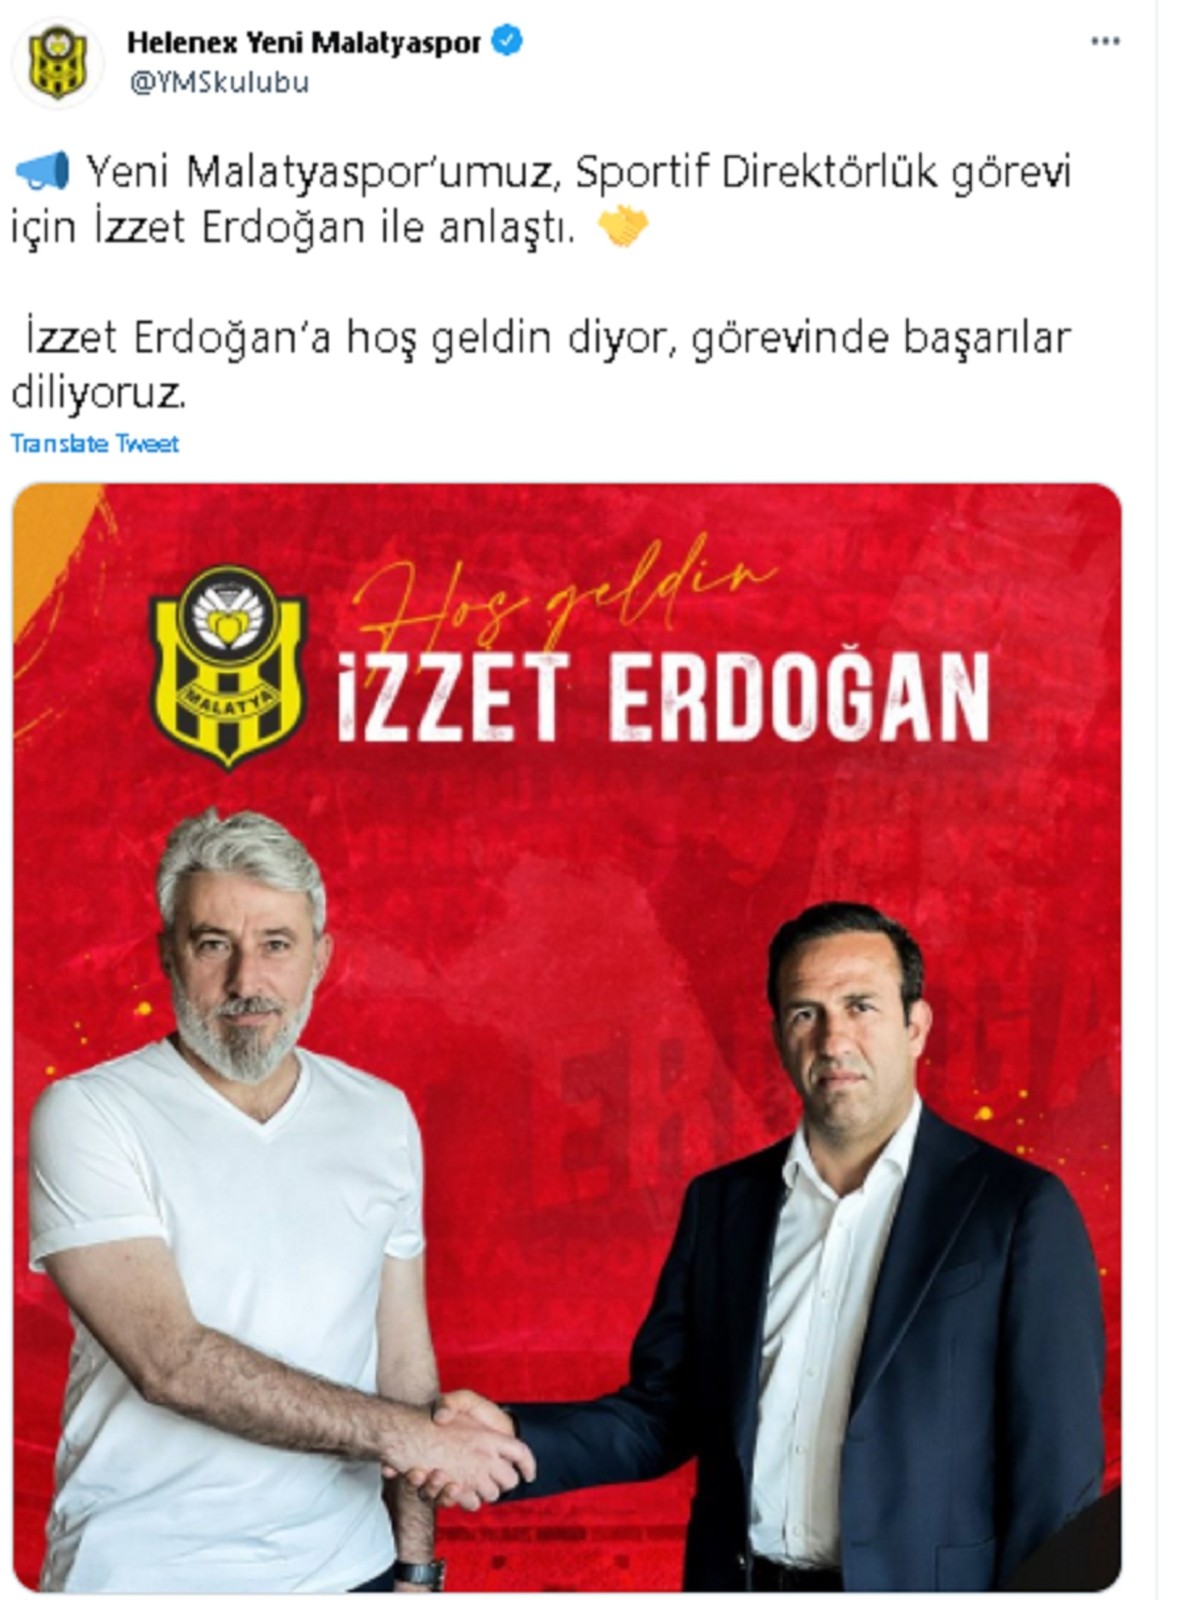 Yeni Malatyaspor’da sportif direktörlüğe İzzet Erdoğan getirildi